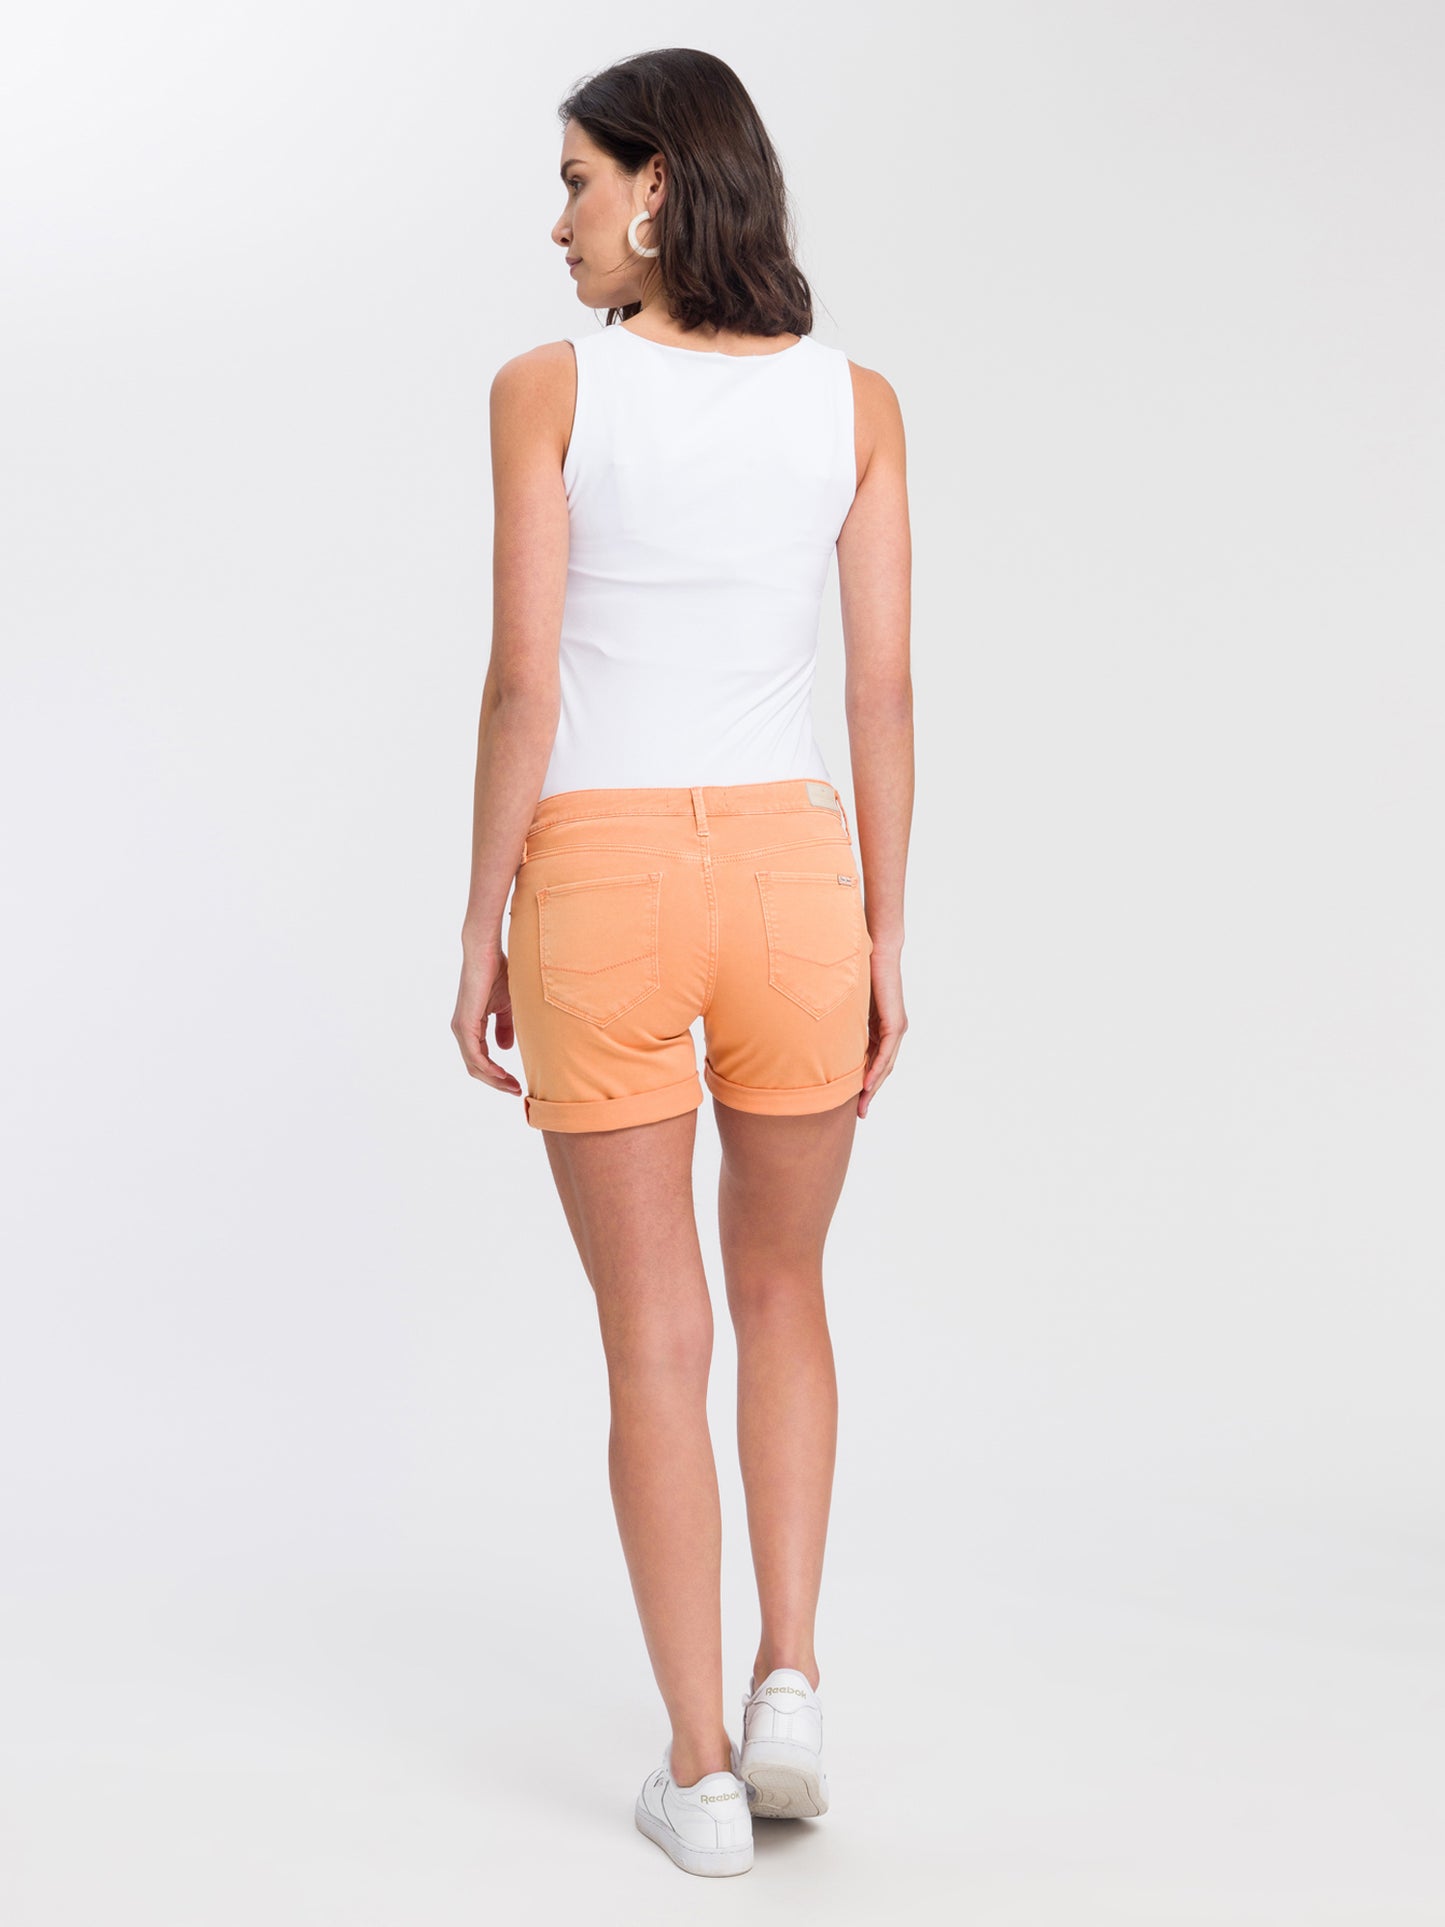 Zena women's jeans slim shorts orange